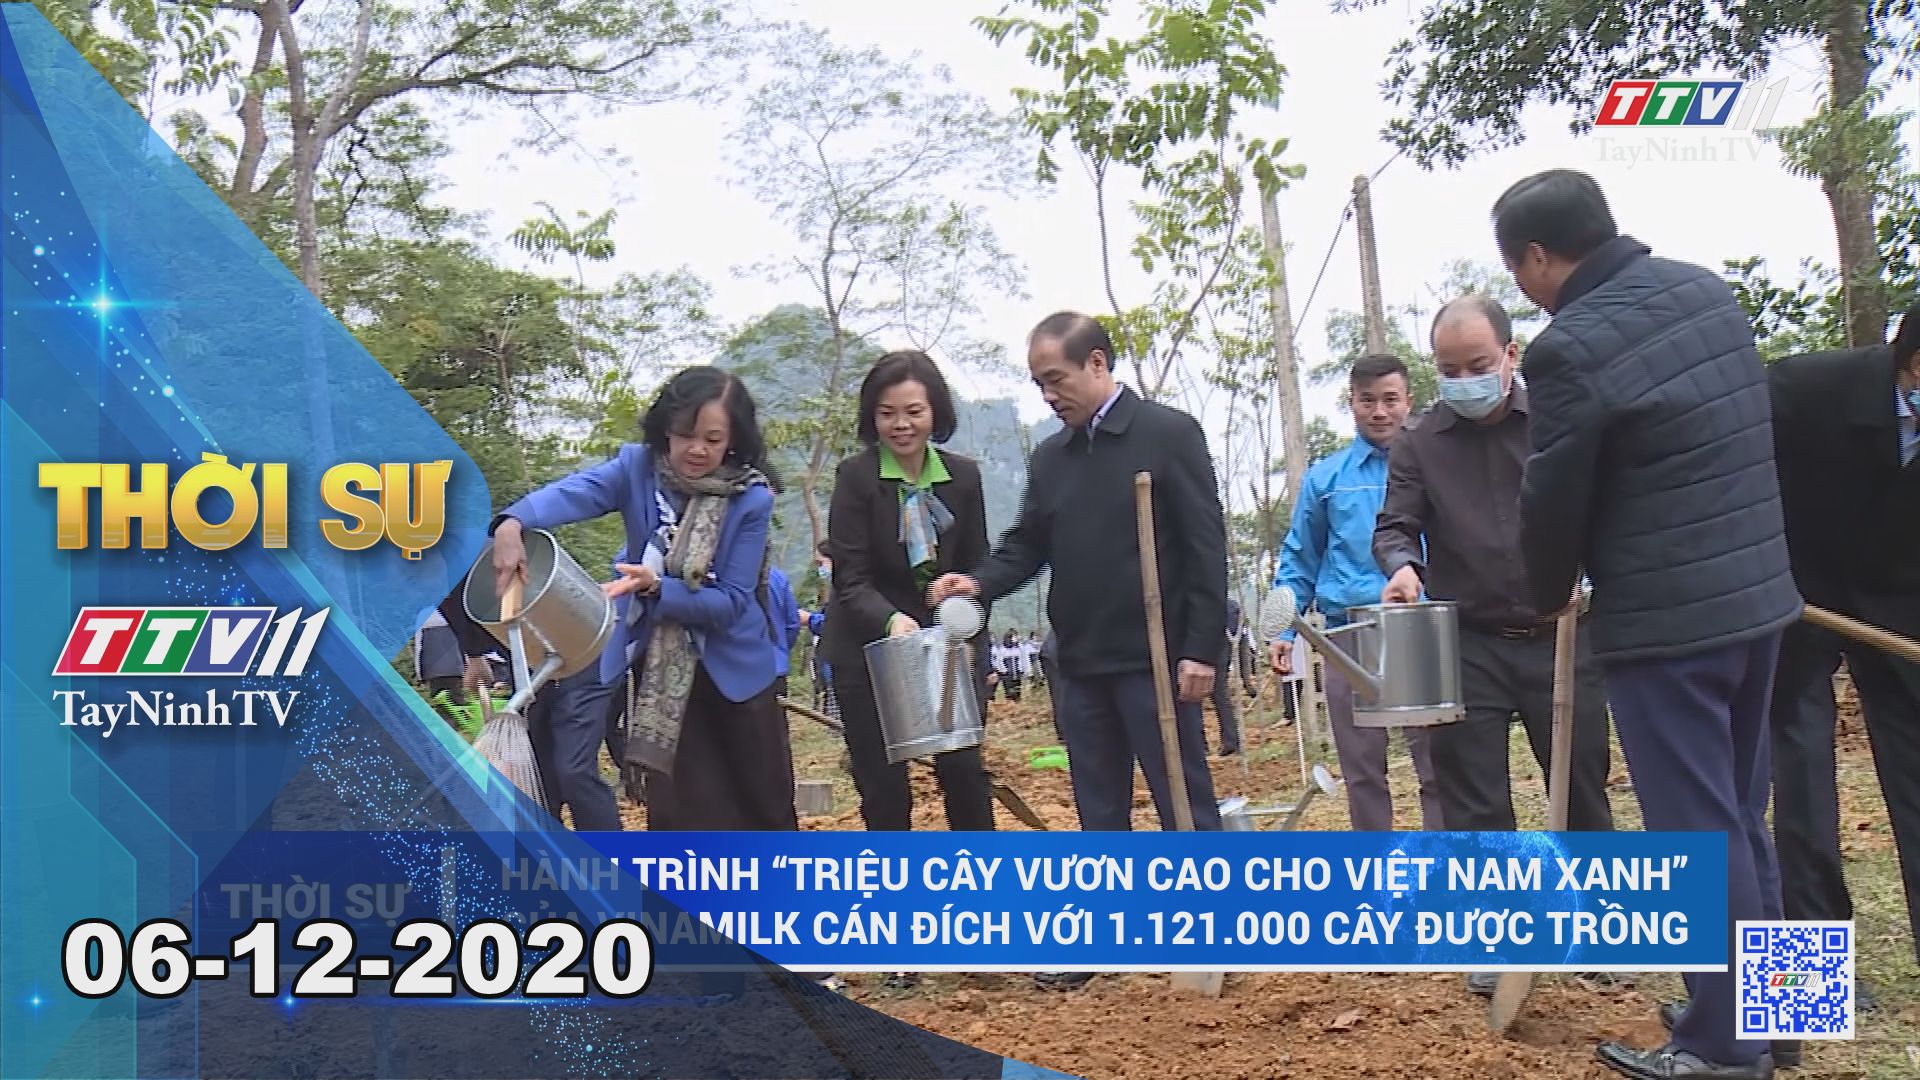 Thời sự Tây Ninh 06-12-2020 | Tin tức hôm nay | TayNinhTV